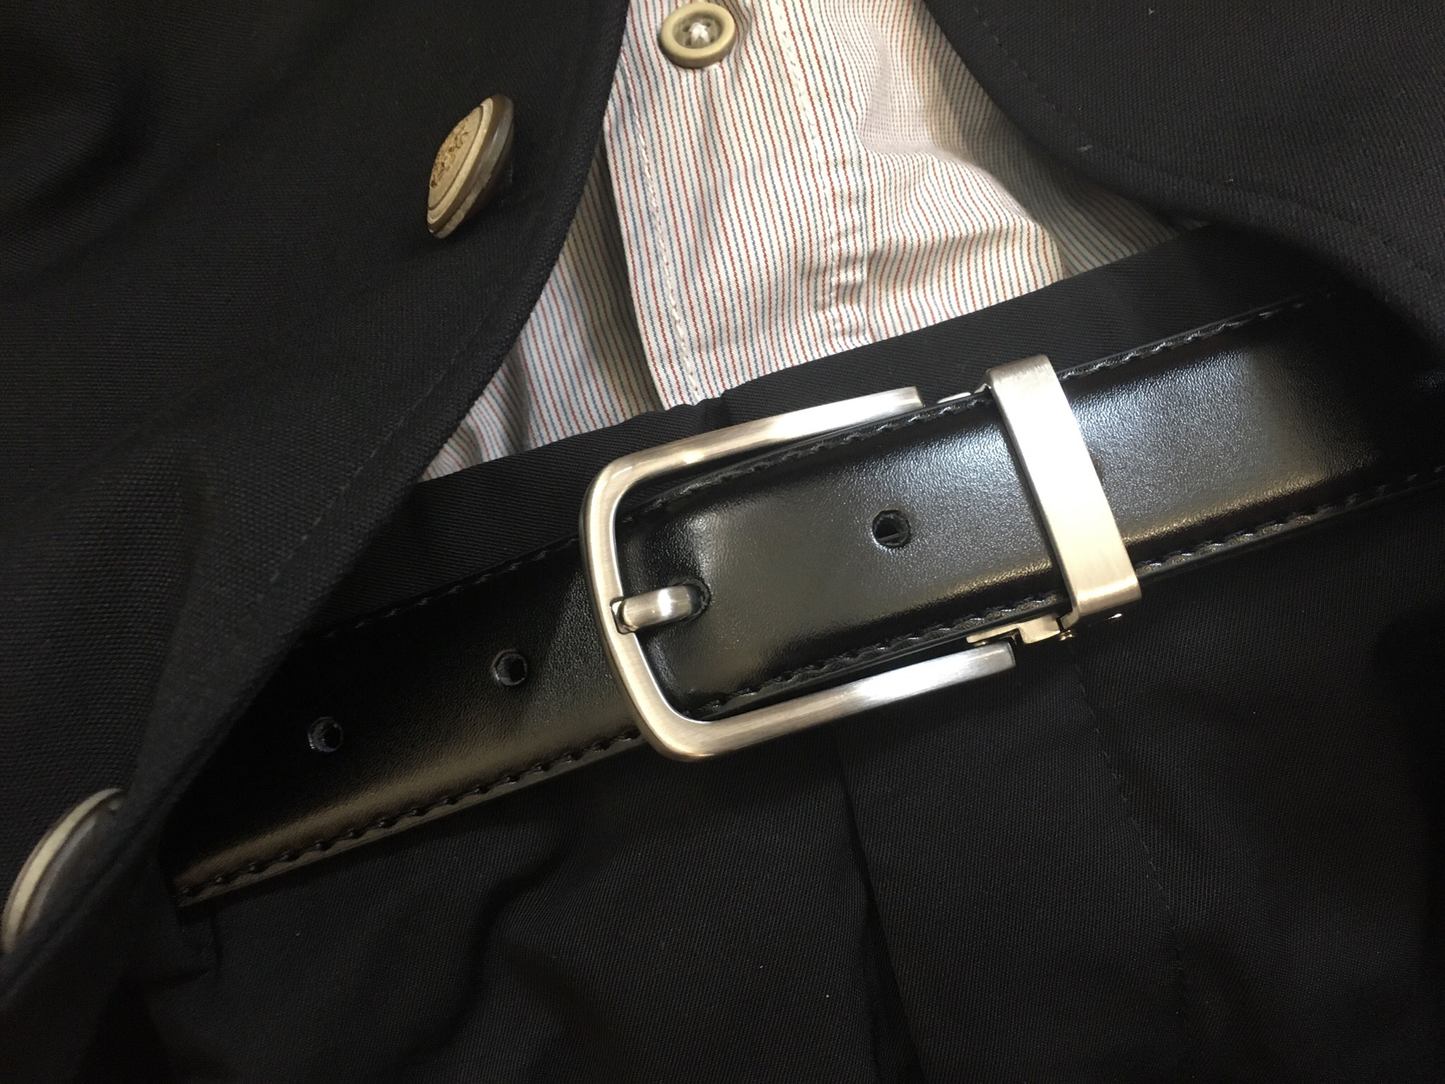 ［香港品牌 EBELT］W 055 光面牛皮皮帶/學生皮帶 Cow Split Leather Belt / Dress Belt / Uniform Belt 3cm